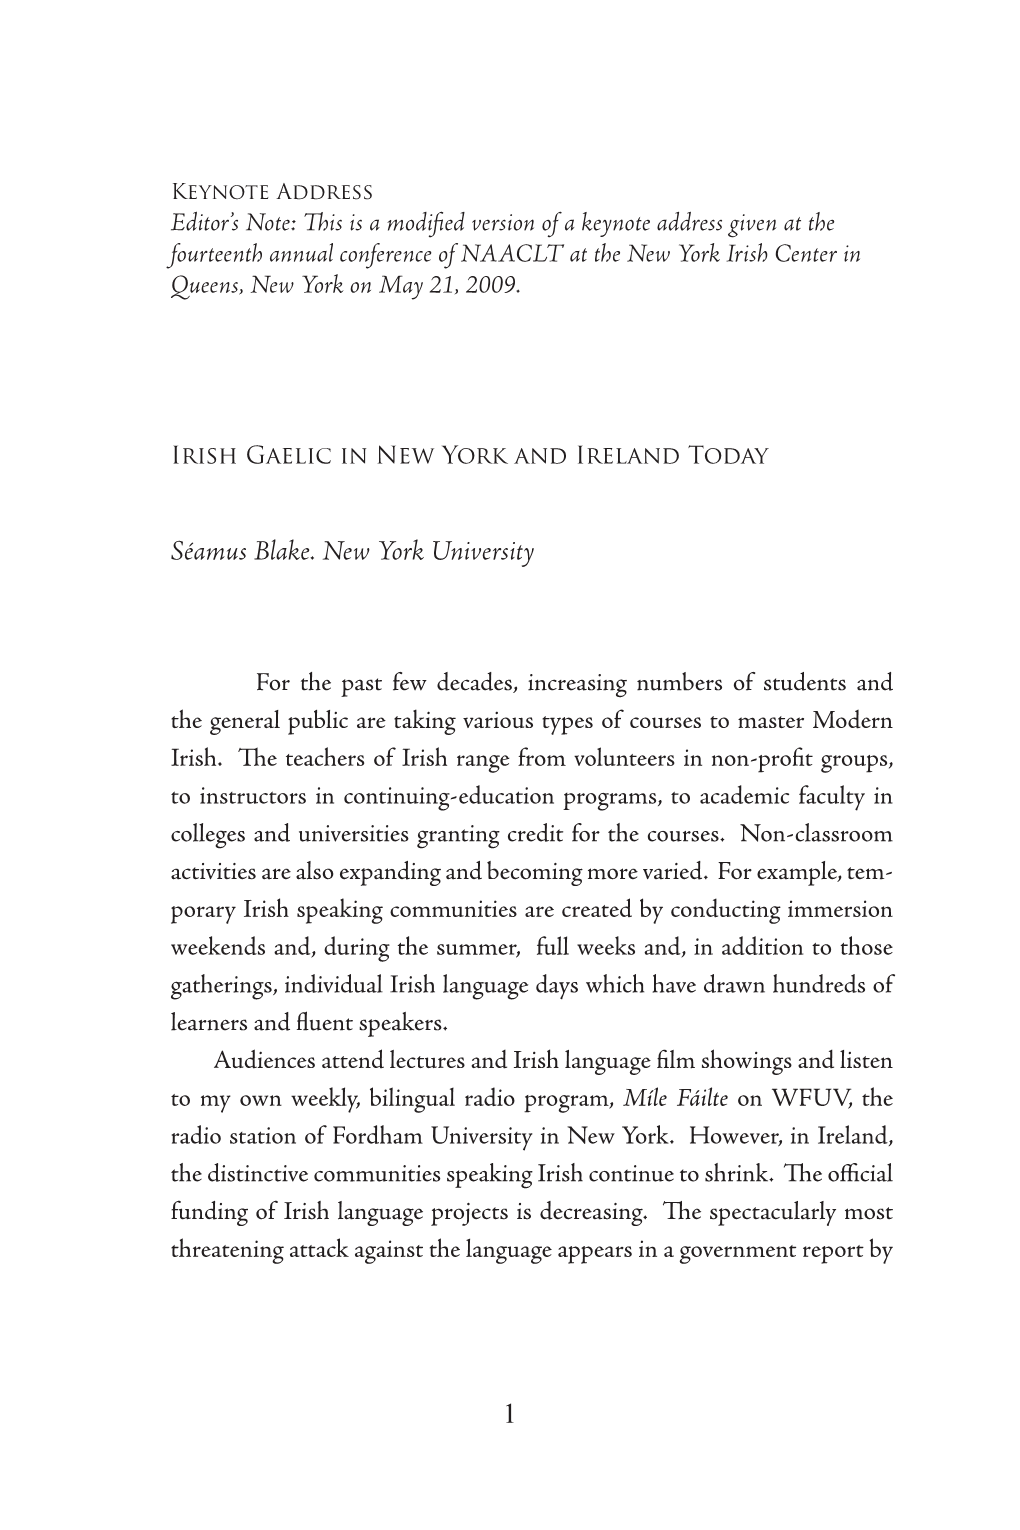 Irish Gaelic in New York and Ireland Today, by Séamus Blake